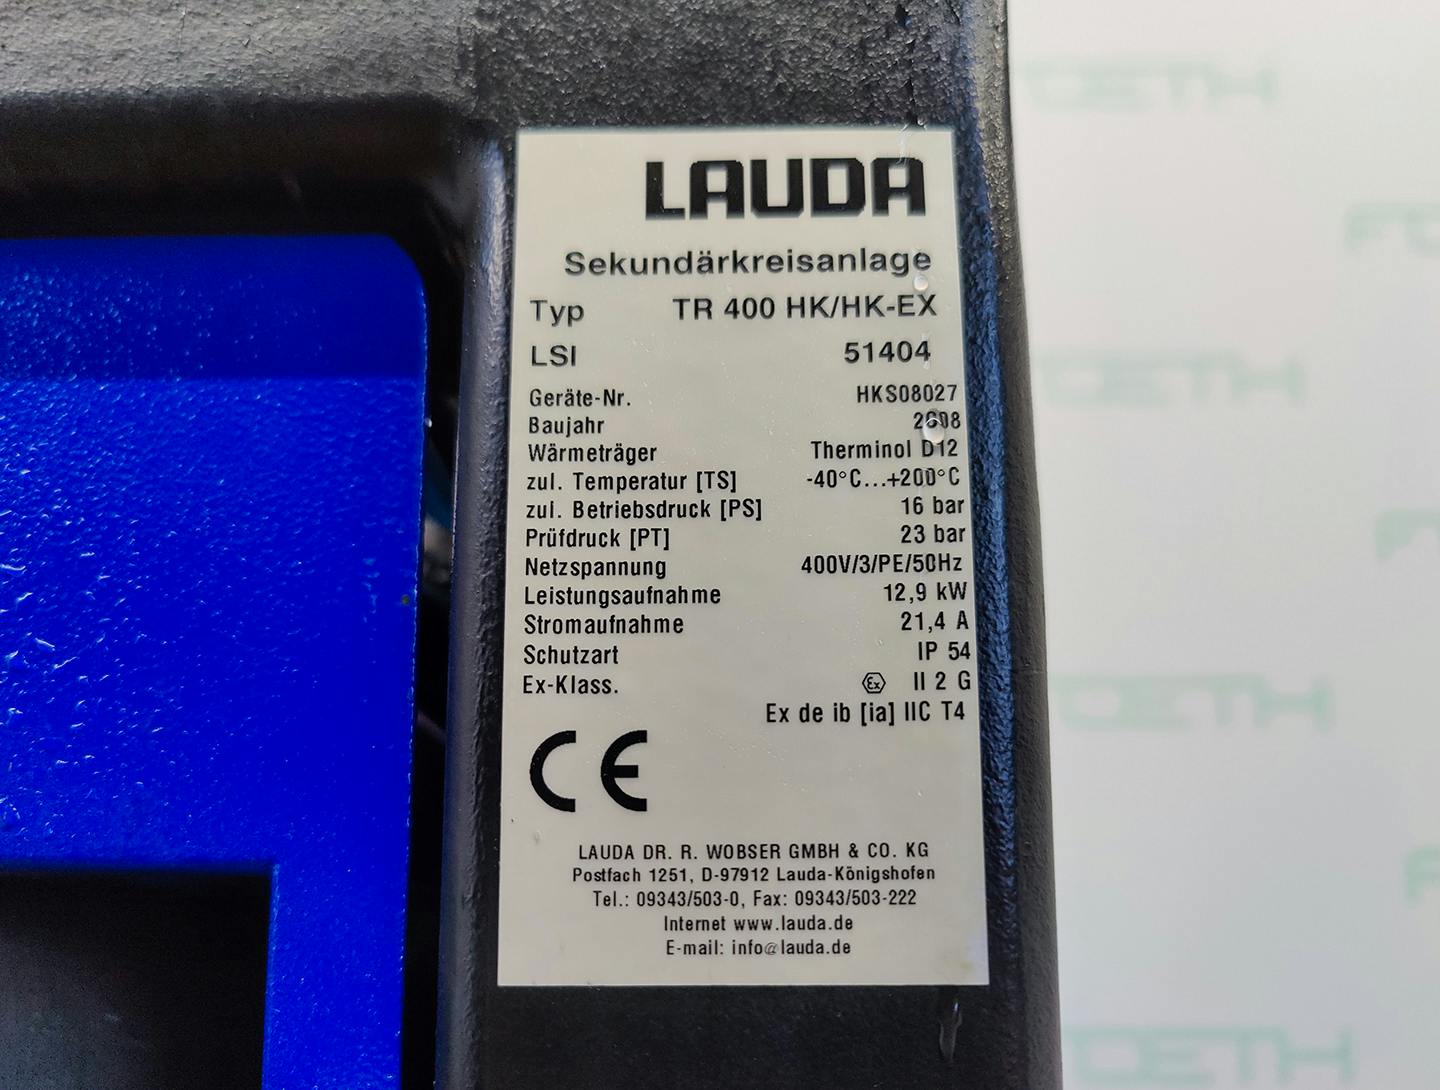 Lauda TR400 HK/HK-EX "secondary circuit system" - Atemperador - image 6